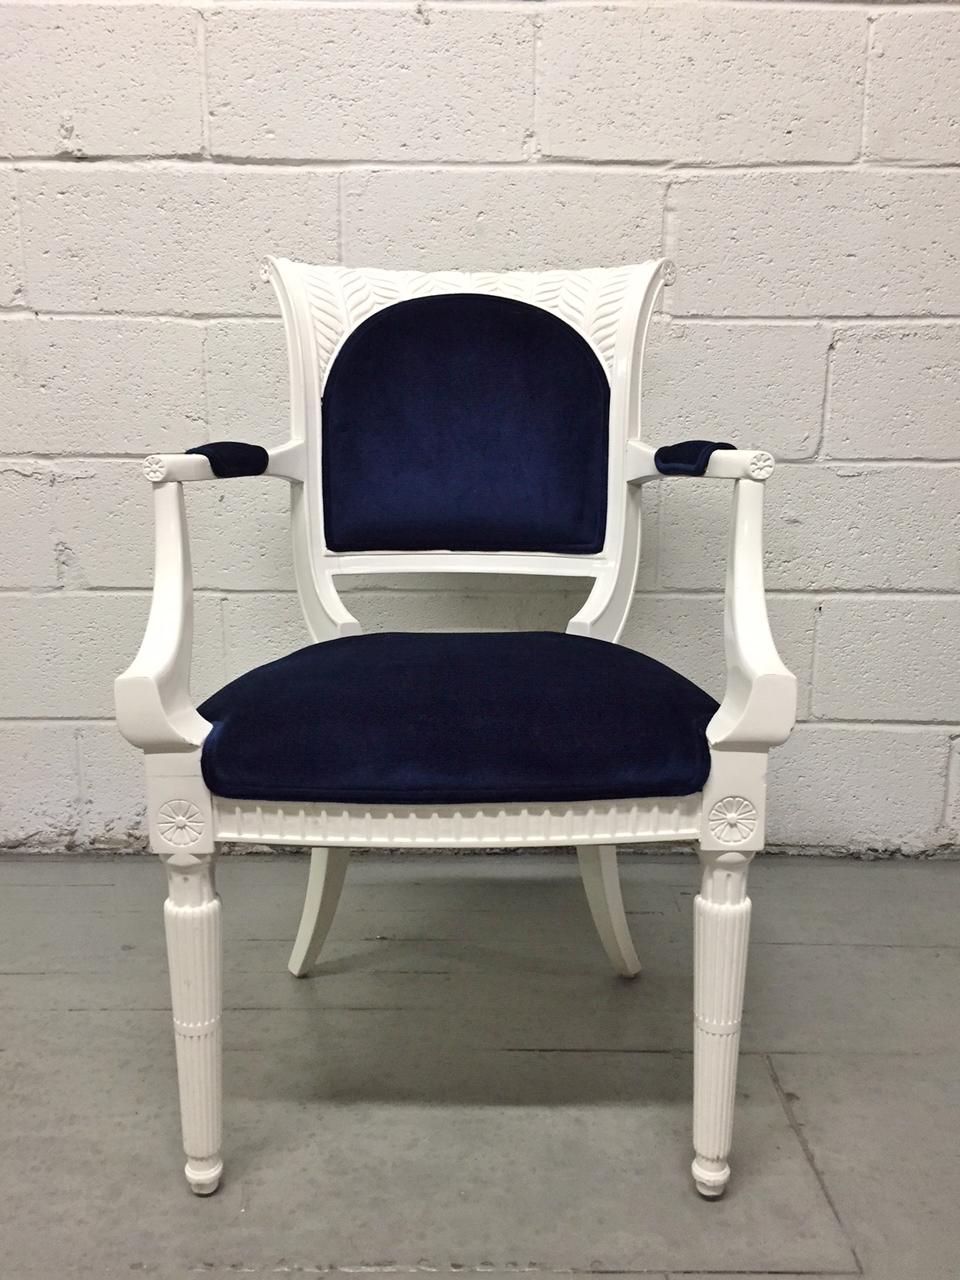 Wunderschönes Paar Sessel im Regency-Stil mit geschnitzten Rahmen und blauer Mohair-Polsterung. Die Gestelle der Stühle sind weiß lackiert.
 